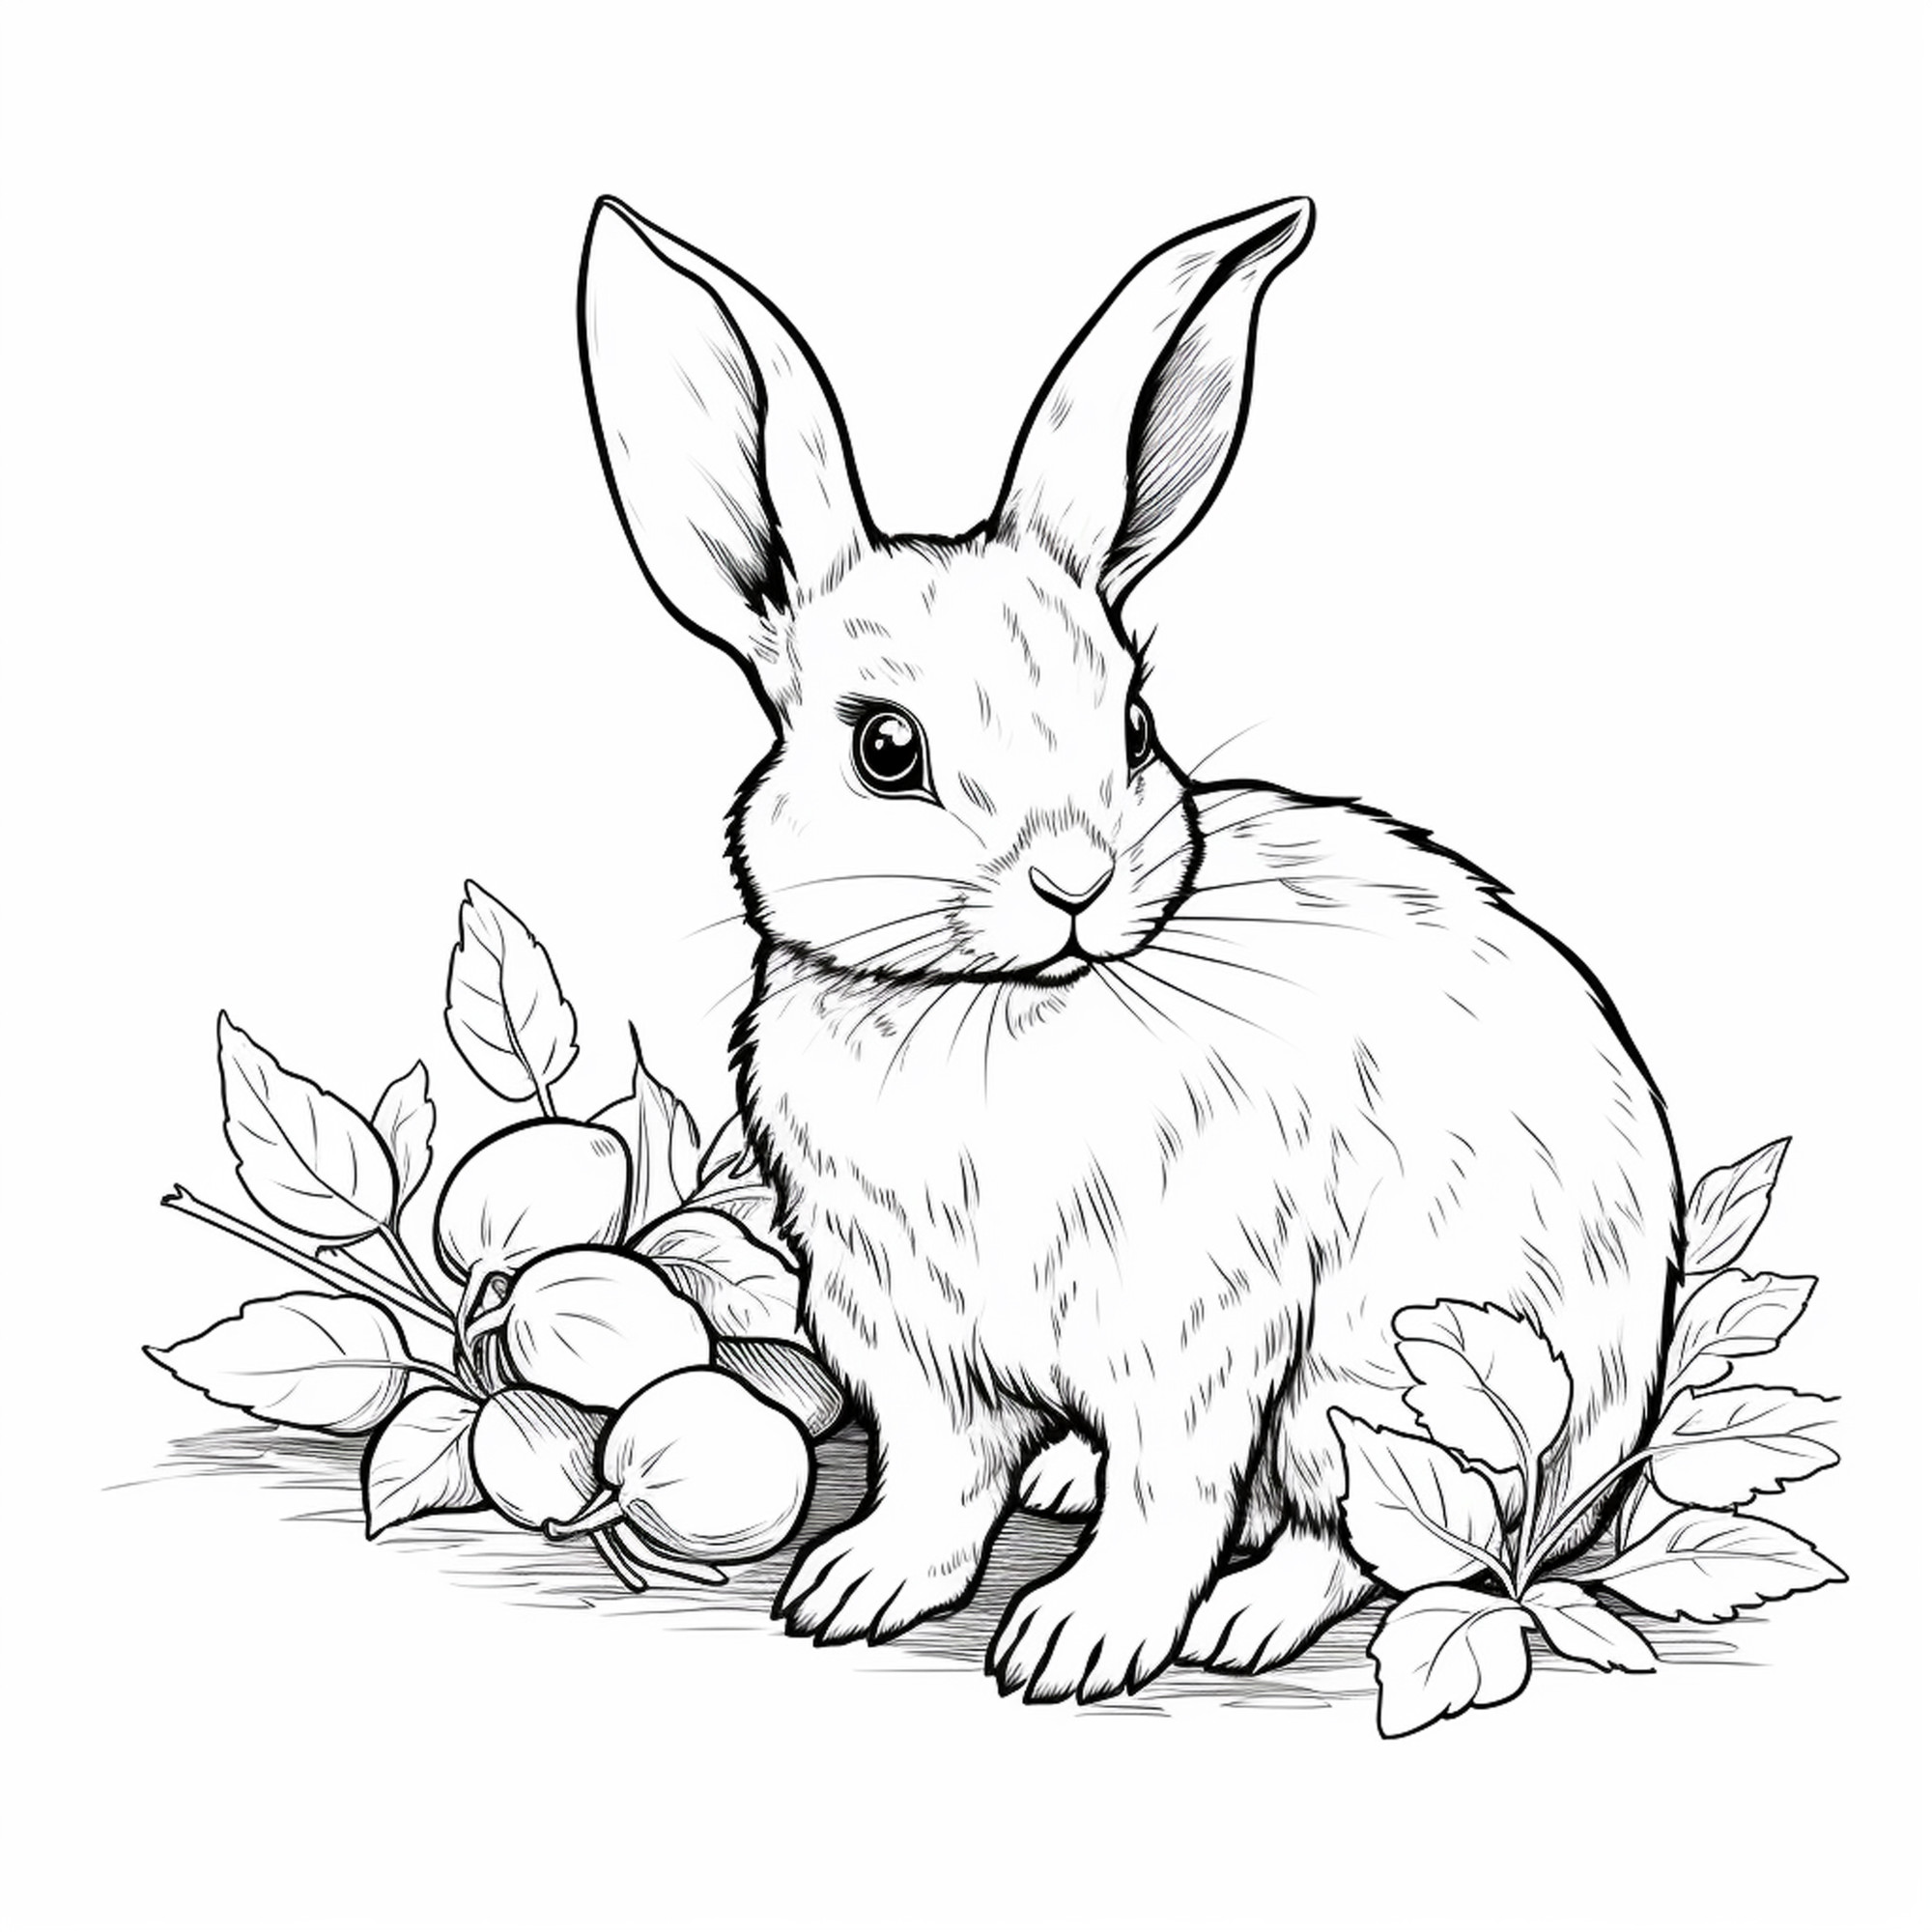 Раскраска для детей: кролик среди осенних листьев